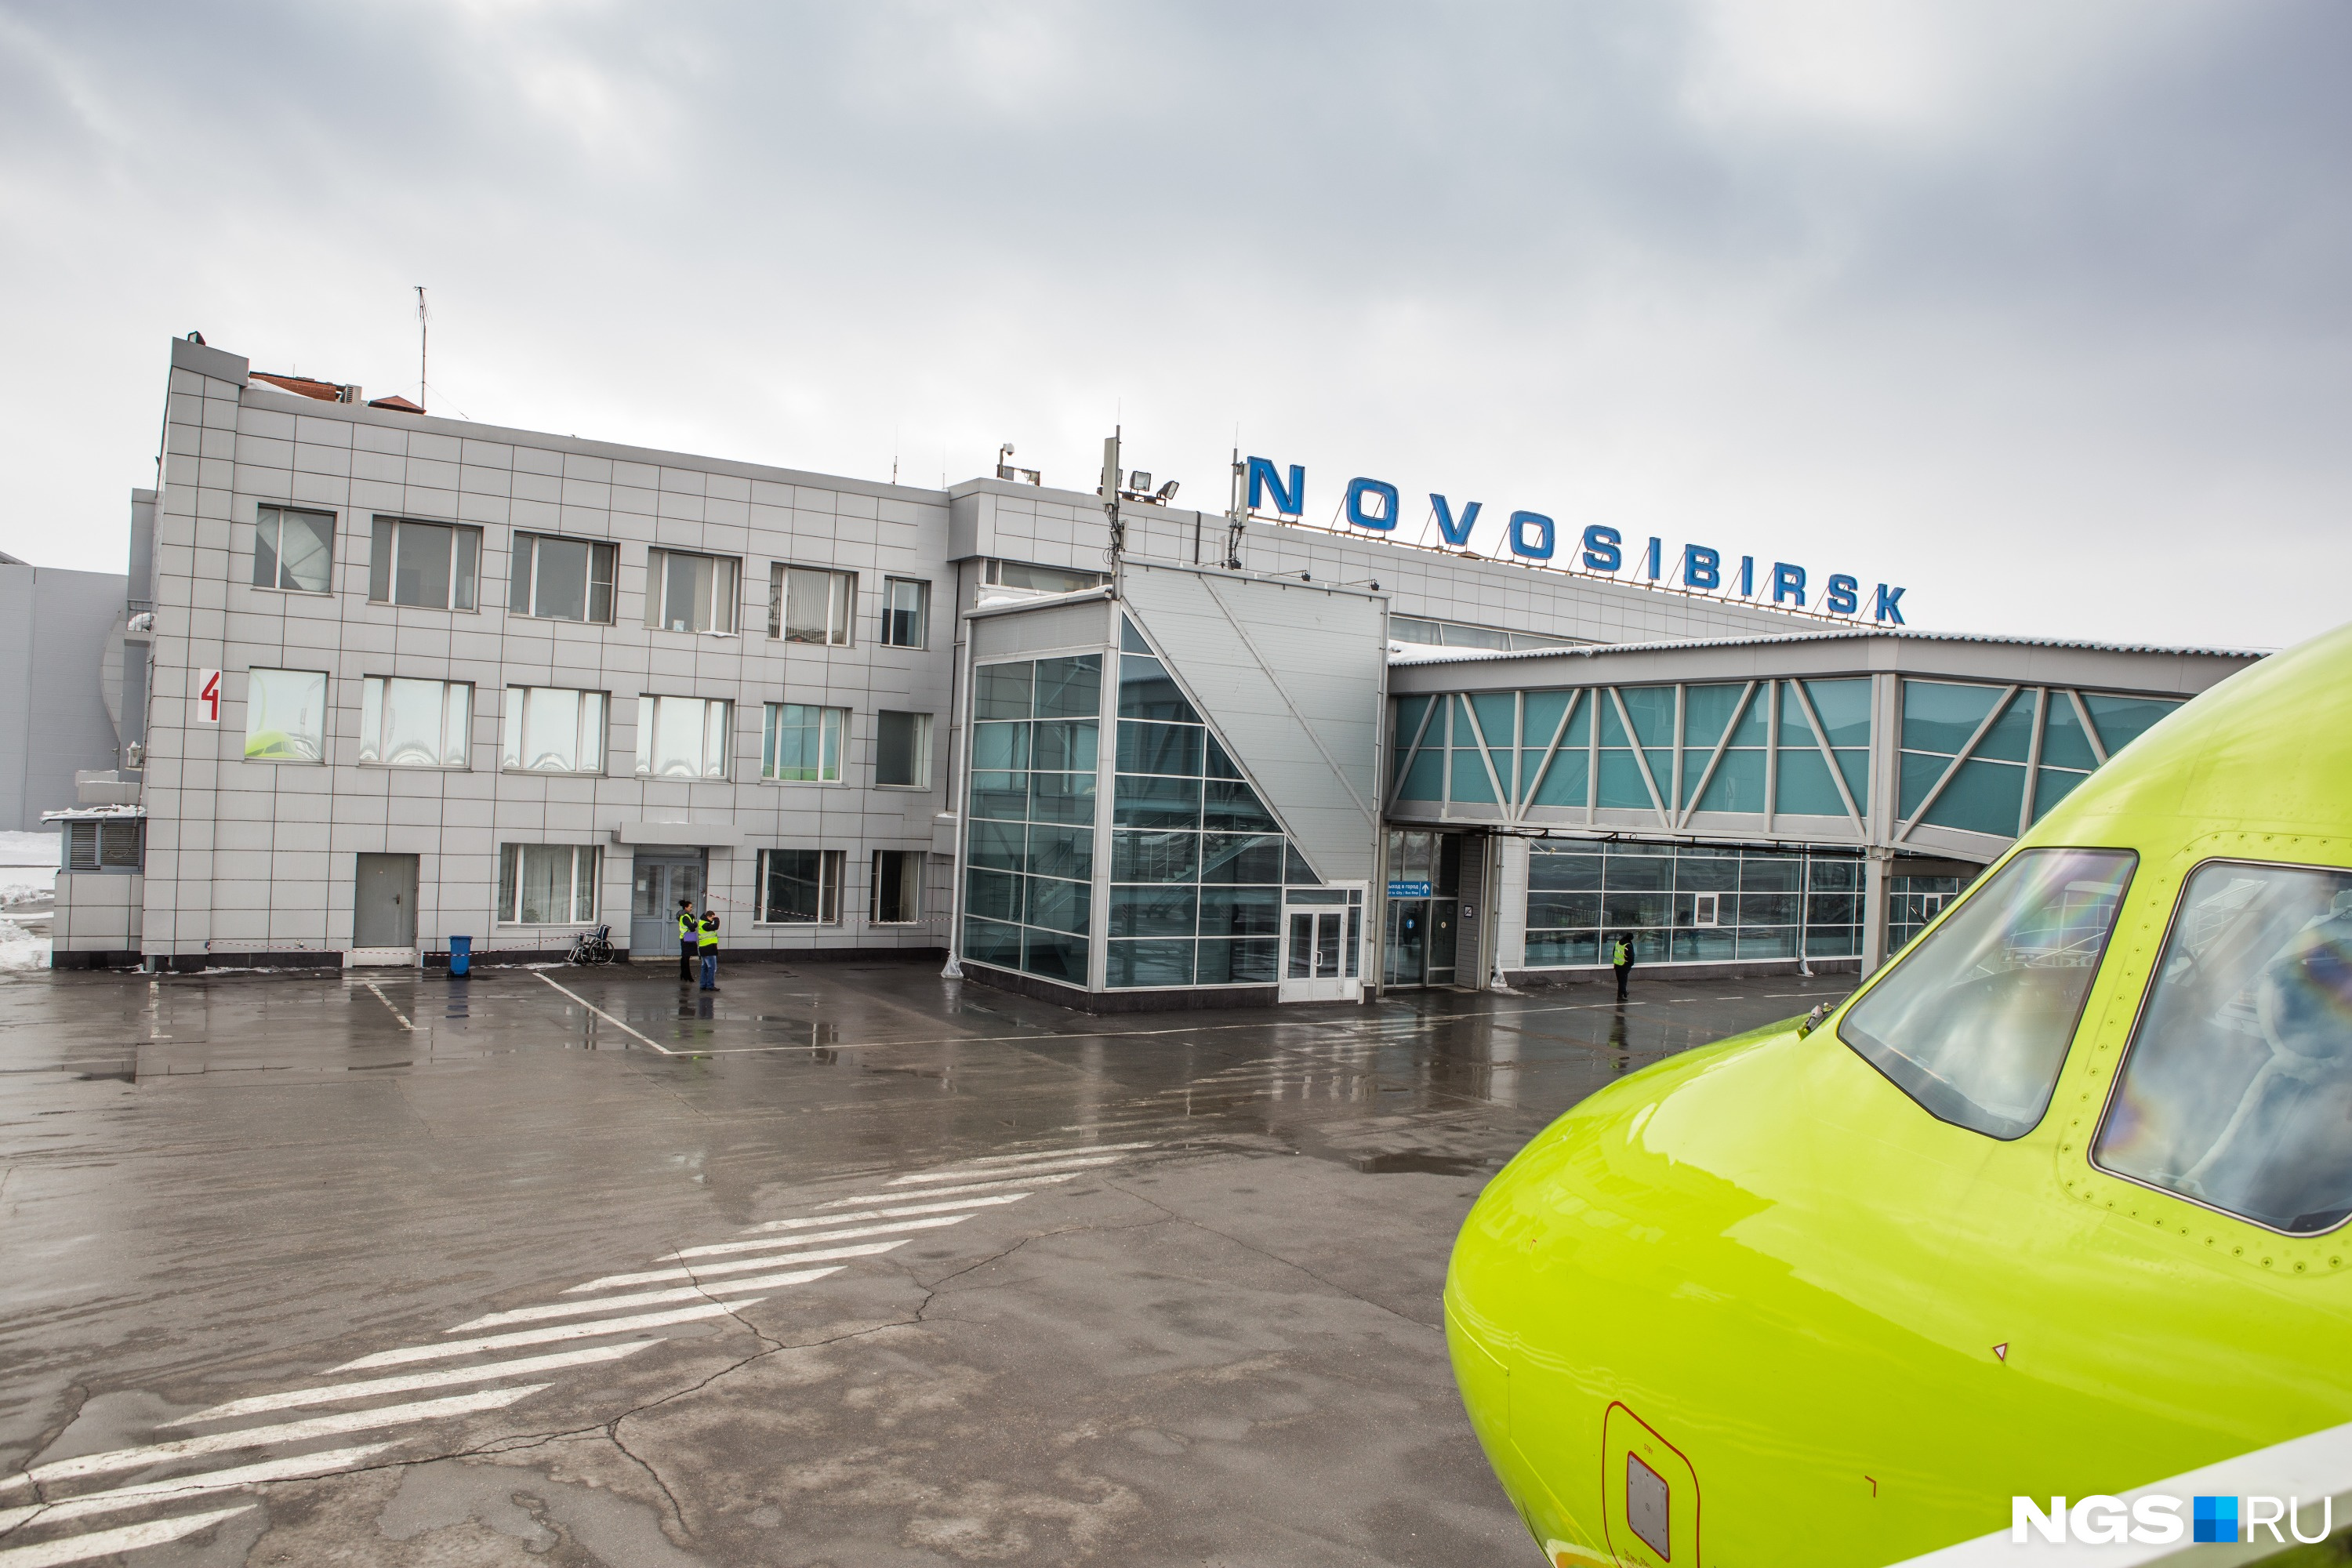 Погода аэропорт новосибирск. Аэродром Толмачево Новосибирск. Толмачева аэропорт Новосибирск. Аэровокзал Новосибирск. Аэропорт Новосибирск самолет.